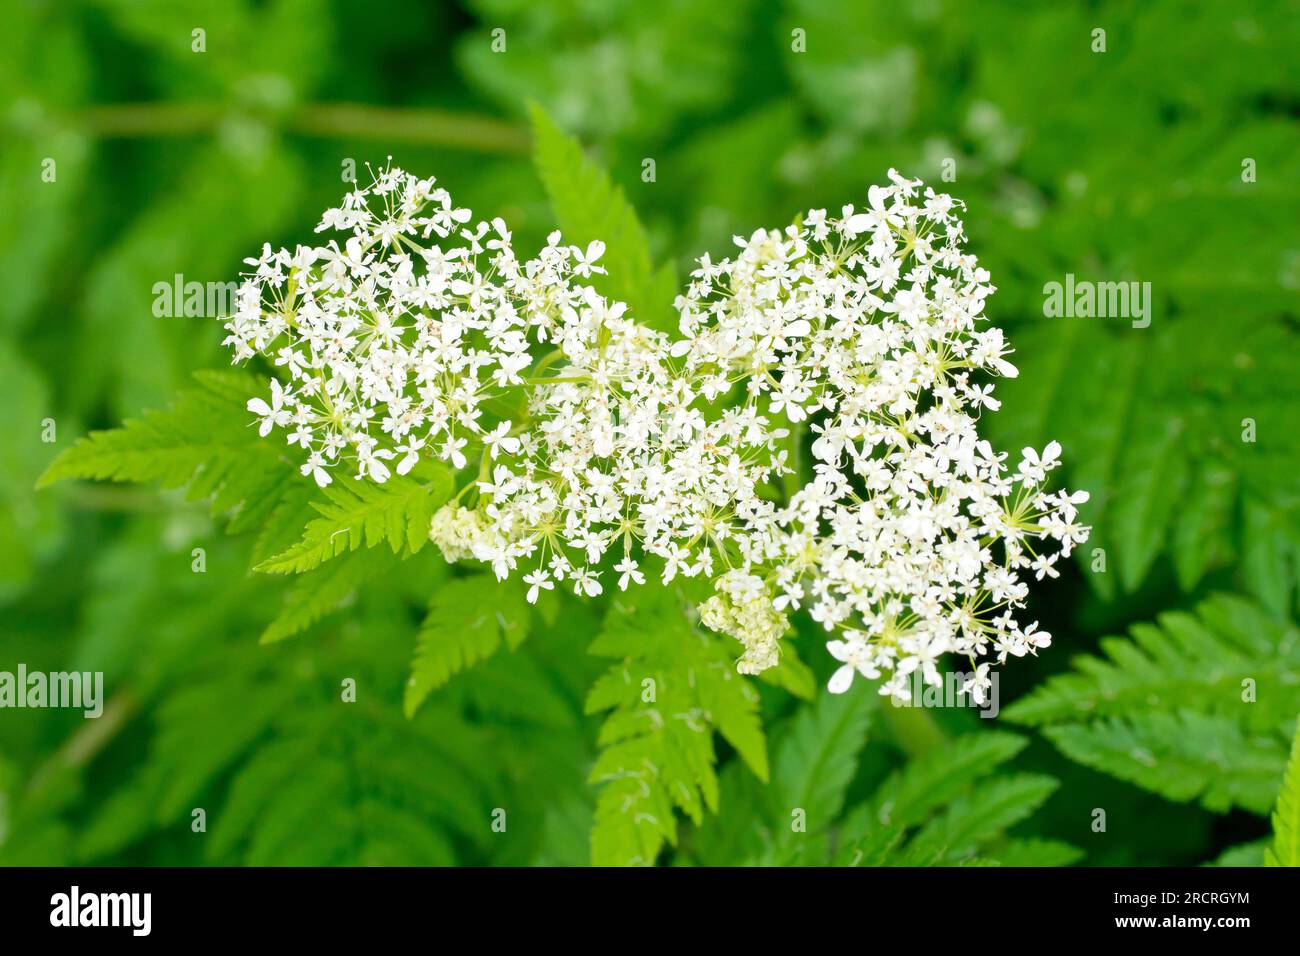 Dolce Cicely (mirra odorata), primo piano che mostra i piccoli fiori bianchi della pianta dal profumo pungente, comune nei boschi e nei prati. Foto Stock